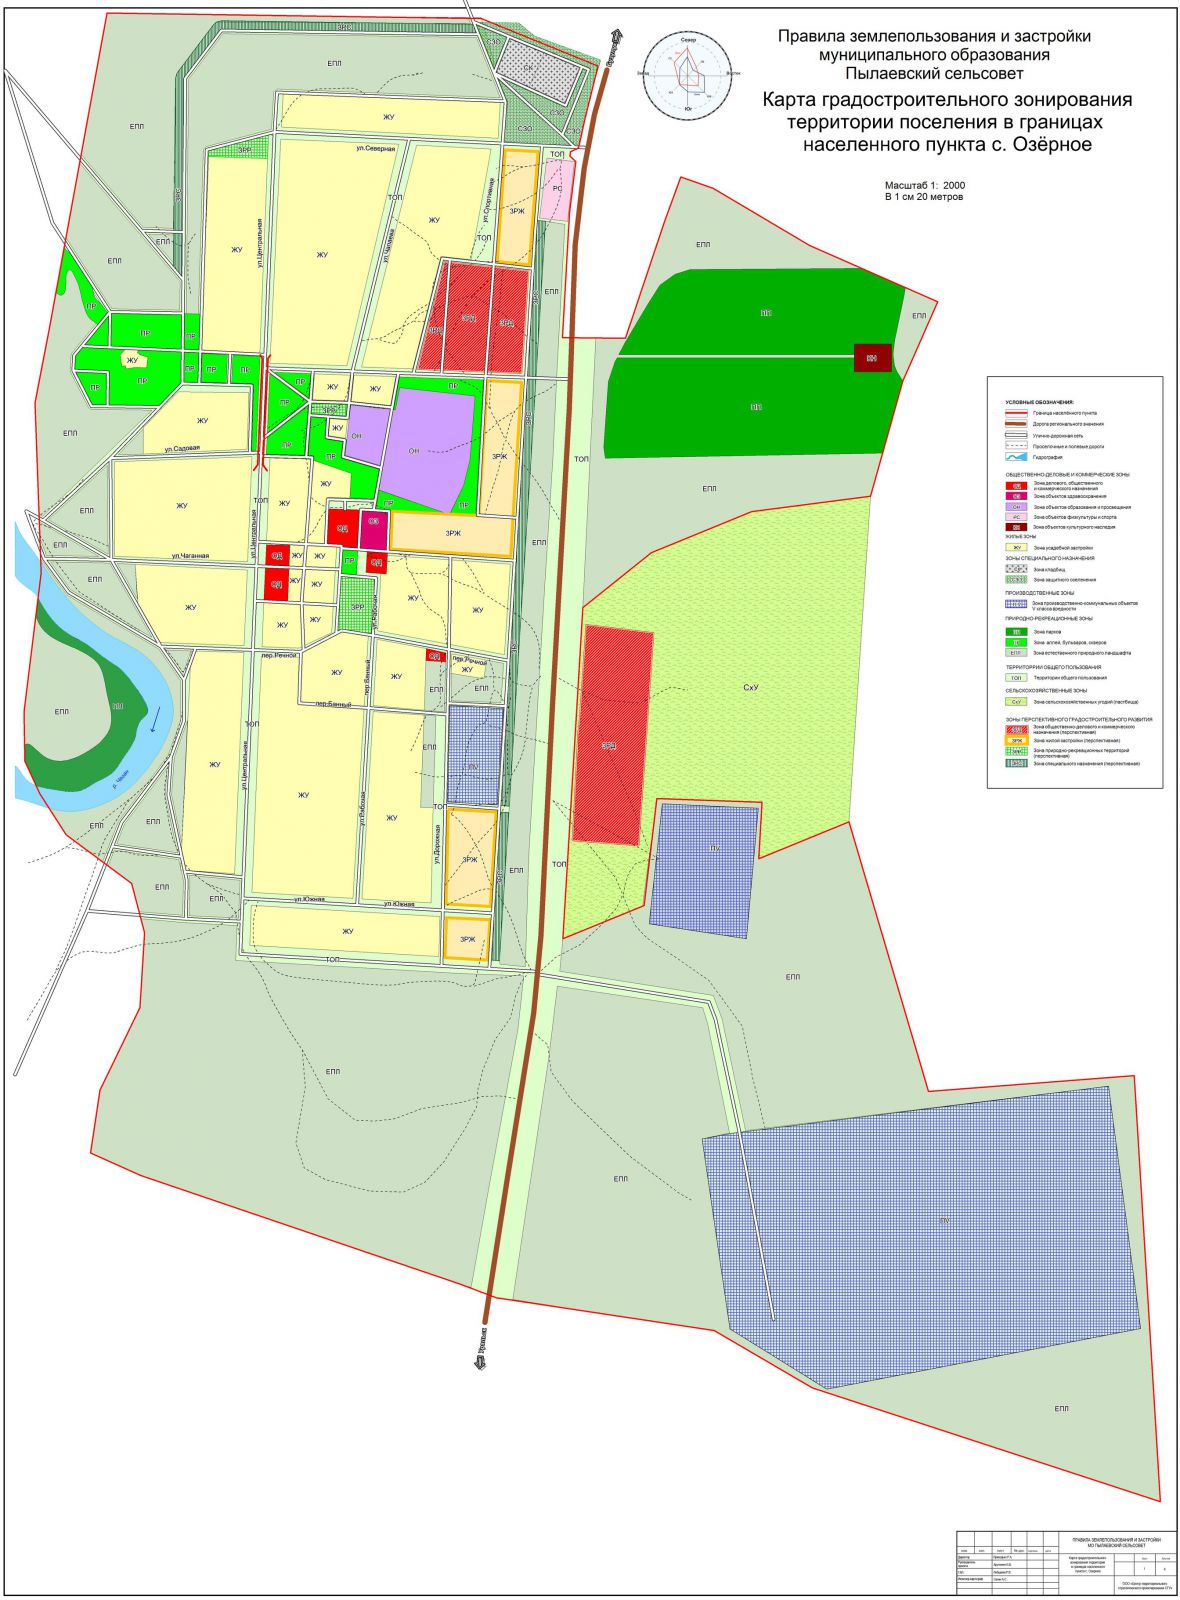 Карта градостроительного зонирования территории в границах населенного пункта с. Озерное